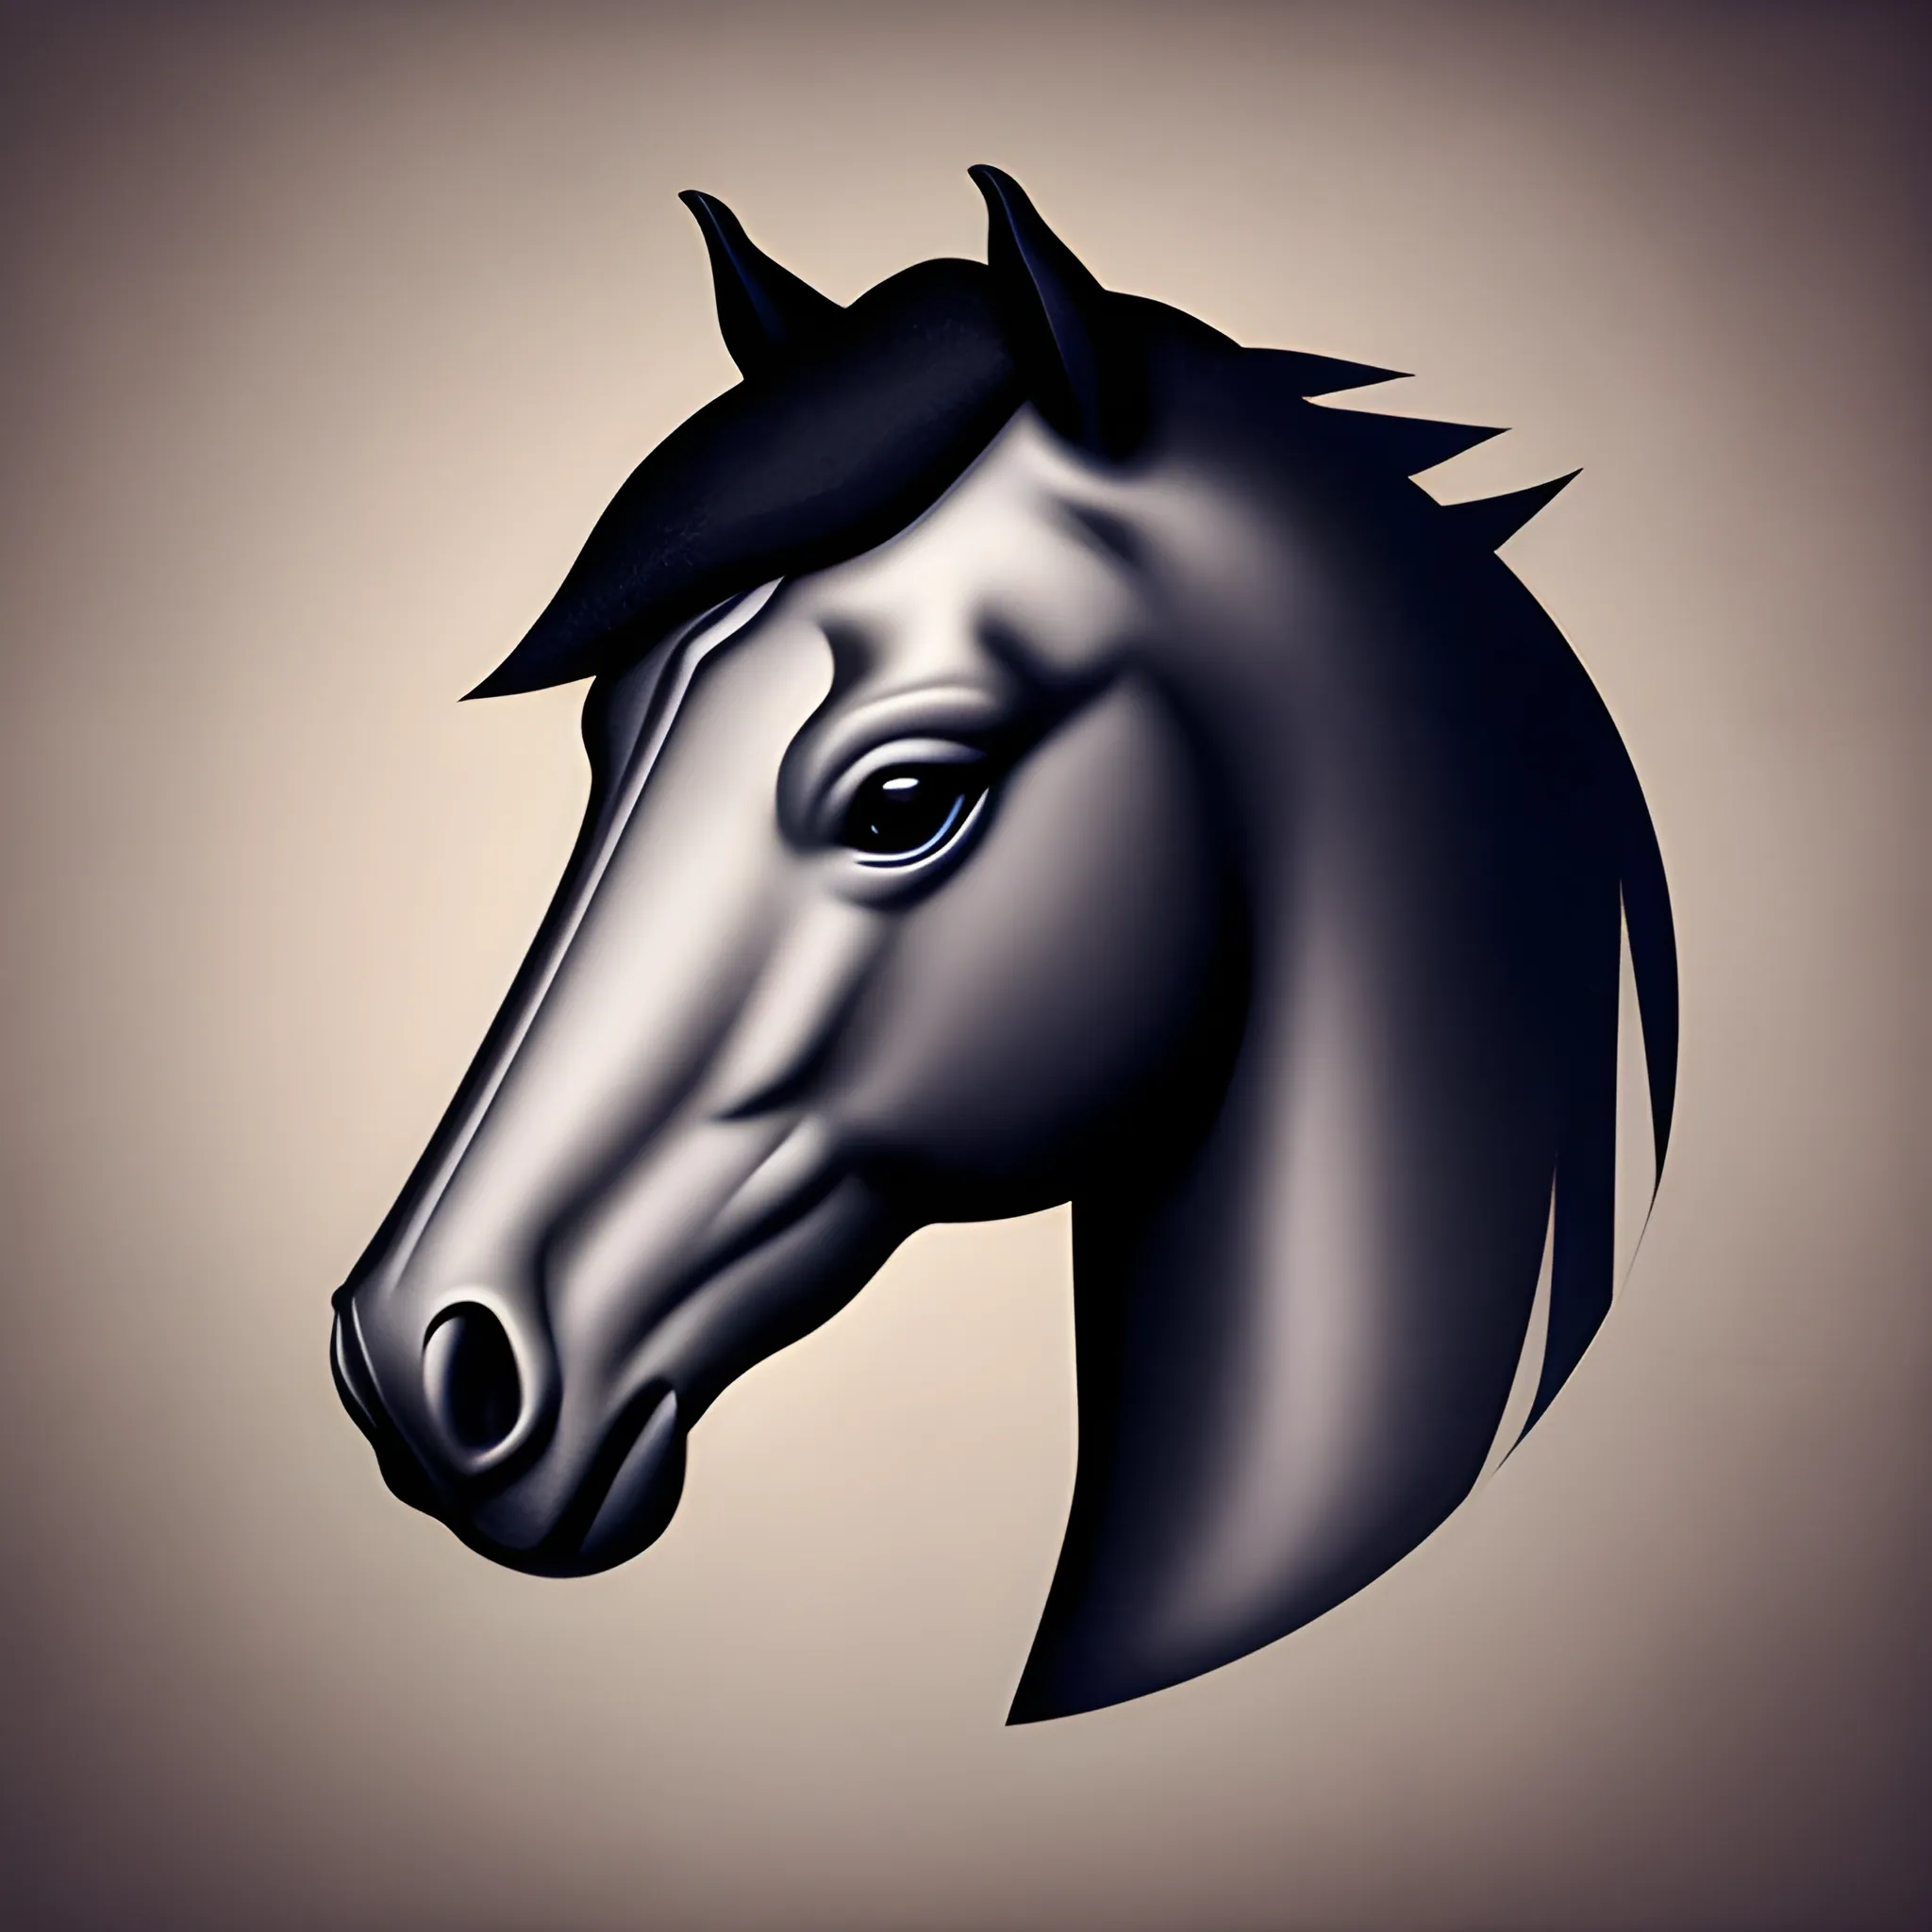 Horse logo, no text, side view - Arthub.ai